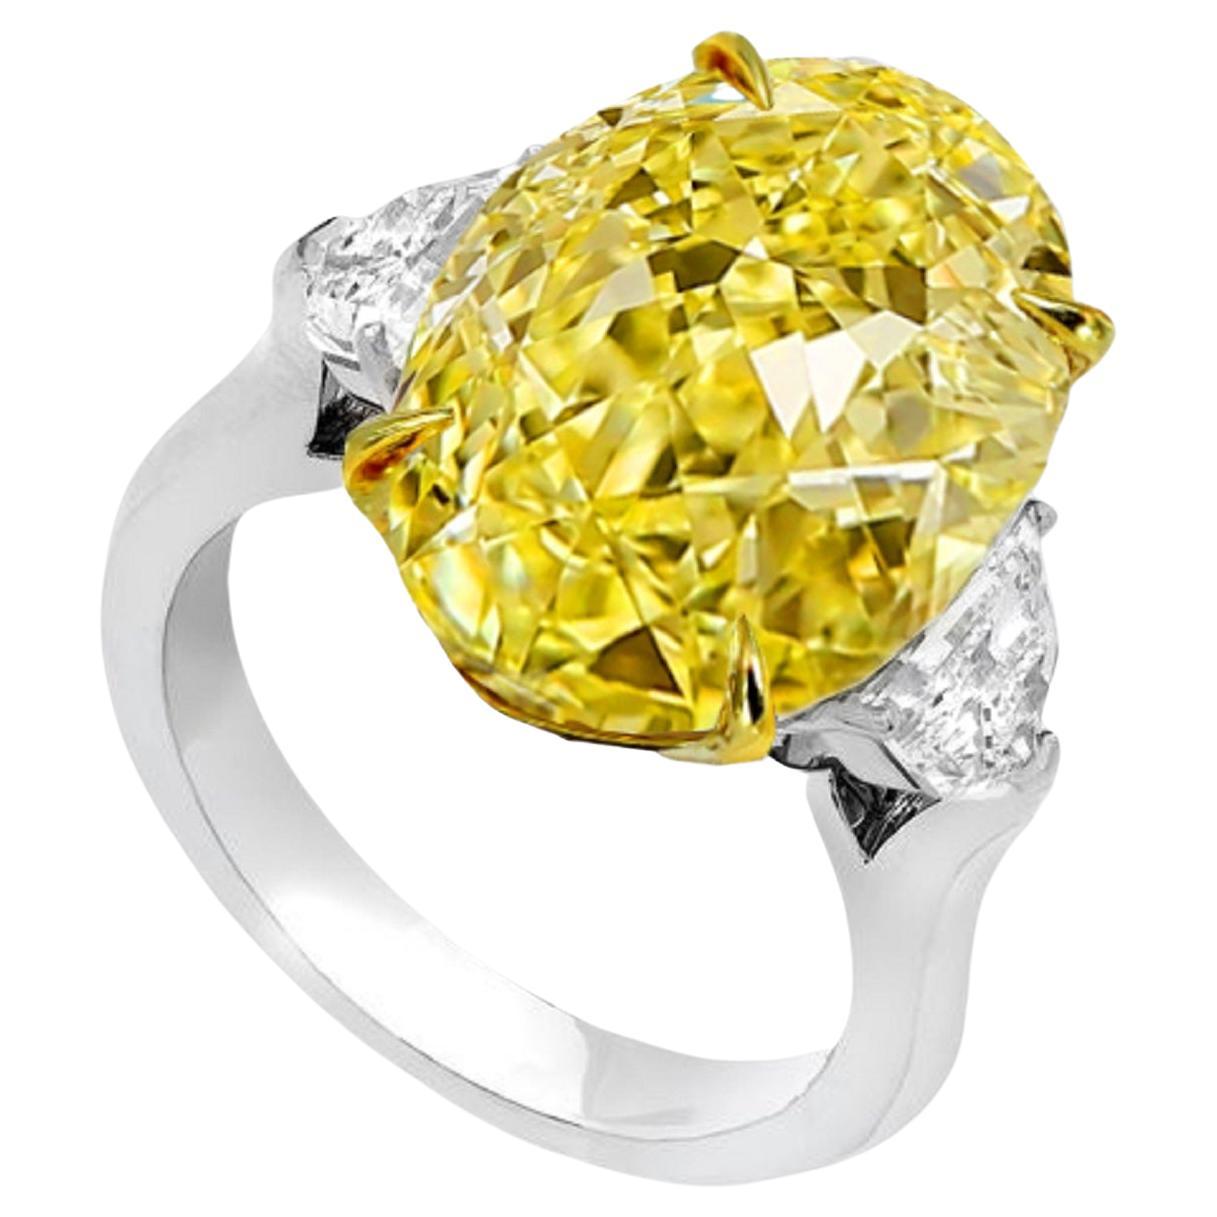 Bague exquise en diamant jaune fantaisie de 5.18 carats
Une clarté sans faille
